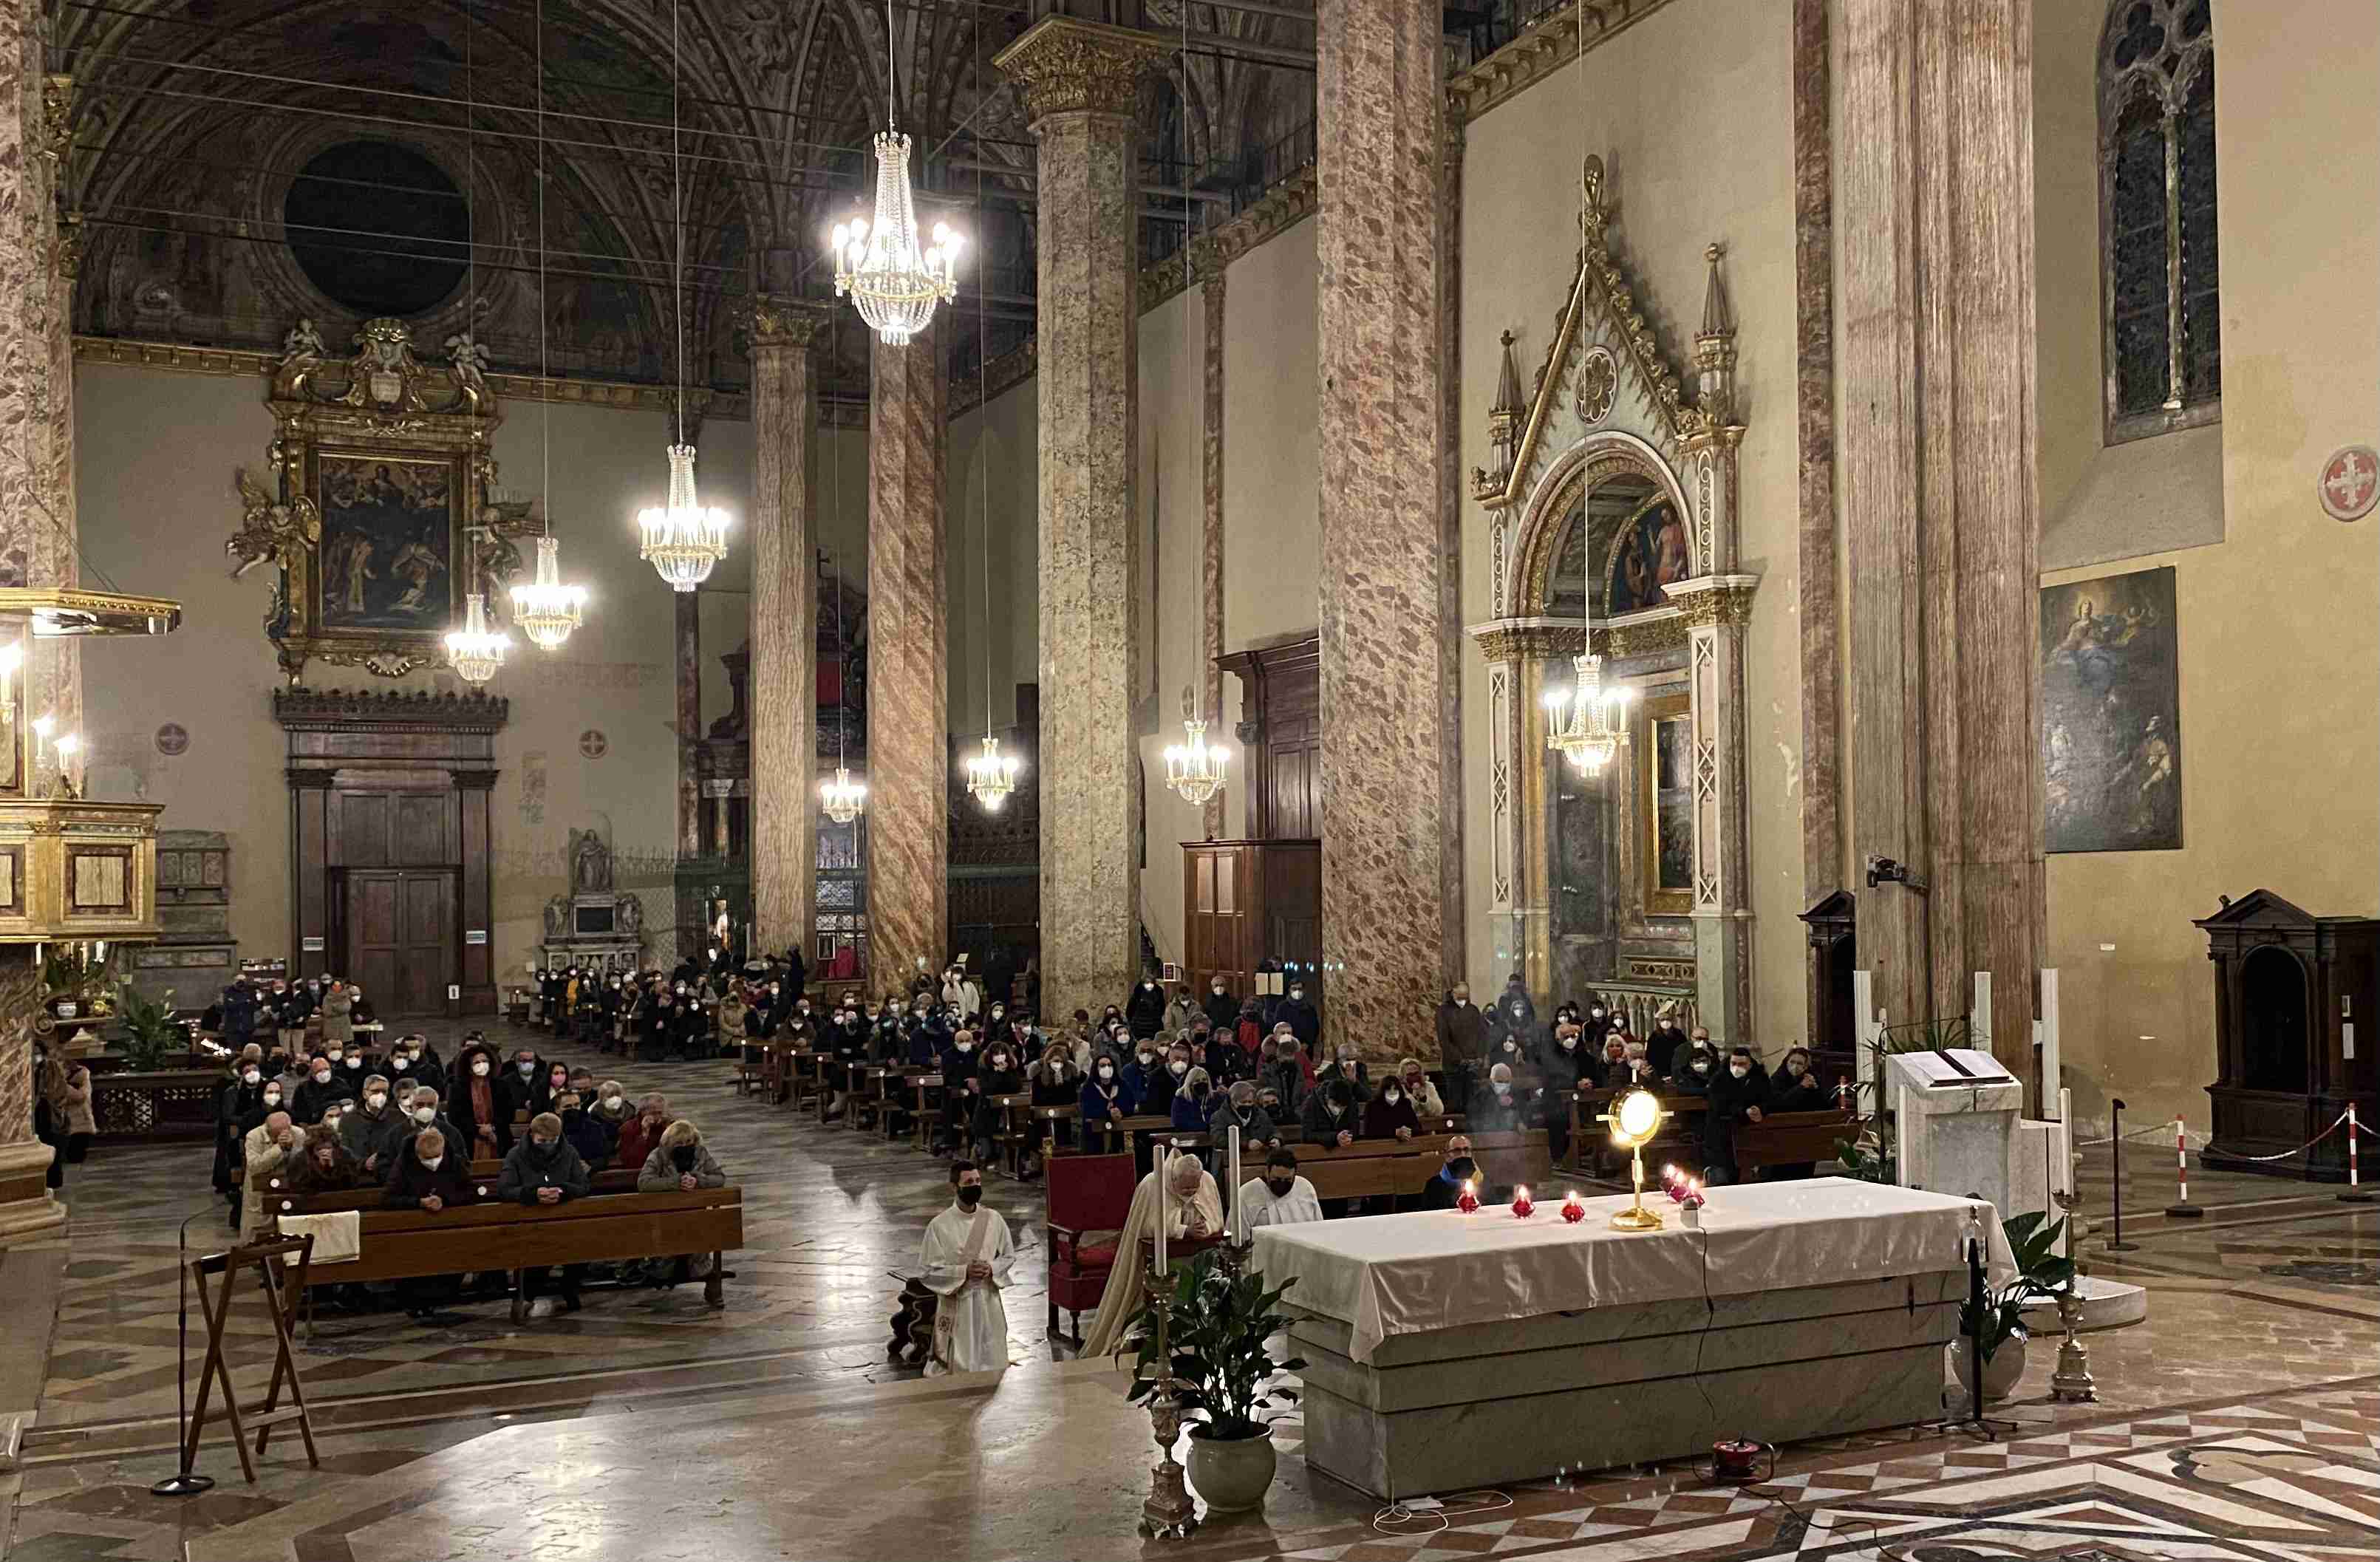 cattedrale perugia 4 marzo22 veglia preghiera con adorazione eucaristica x pace ucraina f1